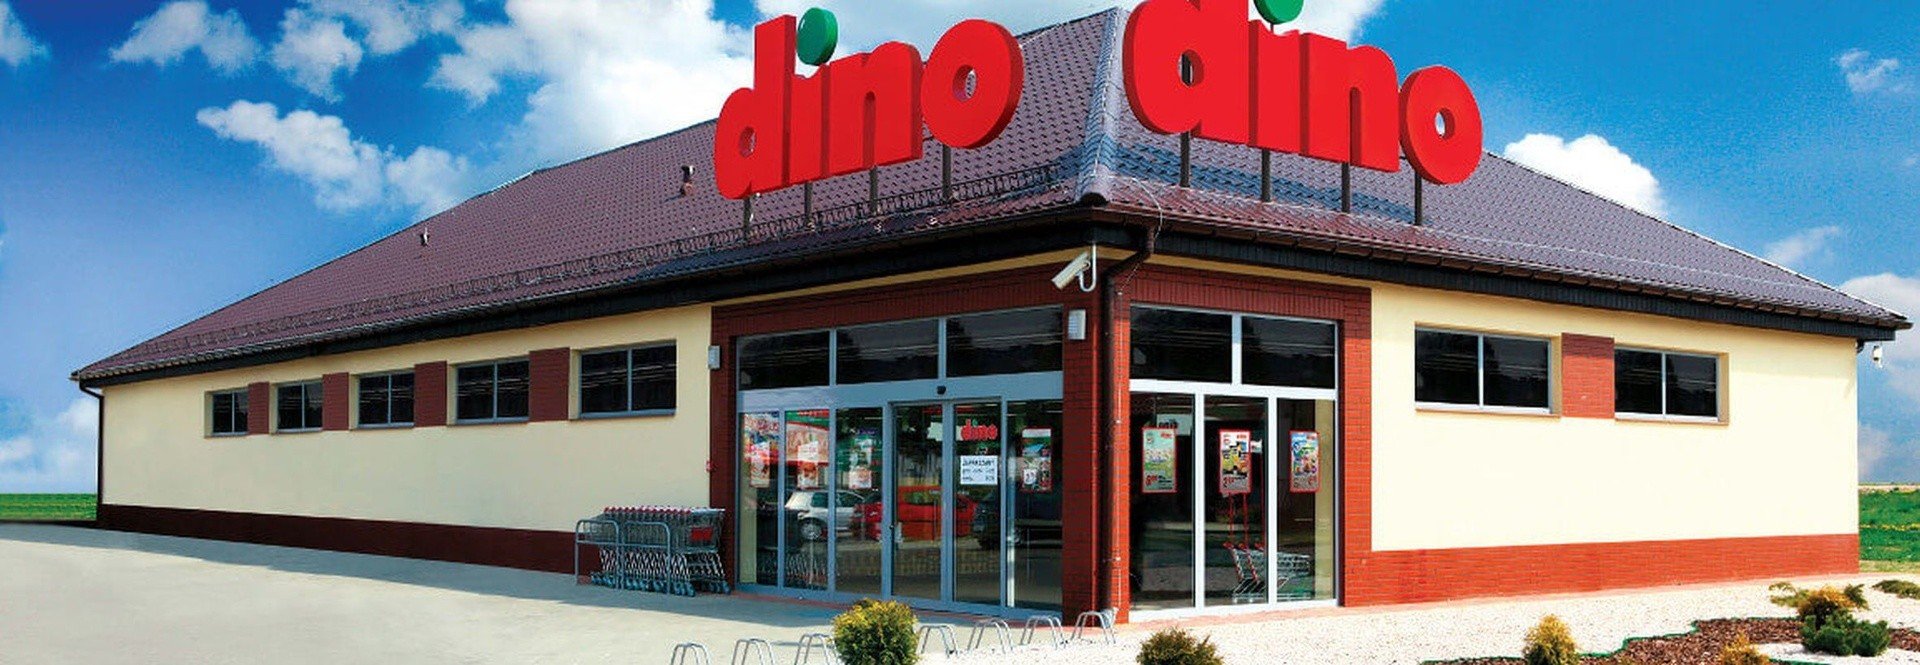 Nowy sieciowy market Dino powstaje w Magnuszewie. Spółka szuka już chętnych  sprzedawców do pracy | Echo Dnia Radomskie